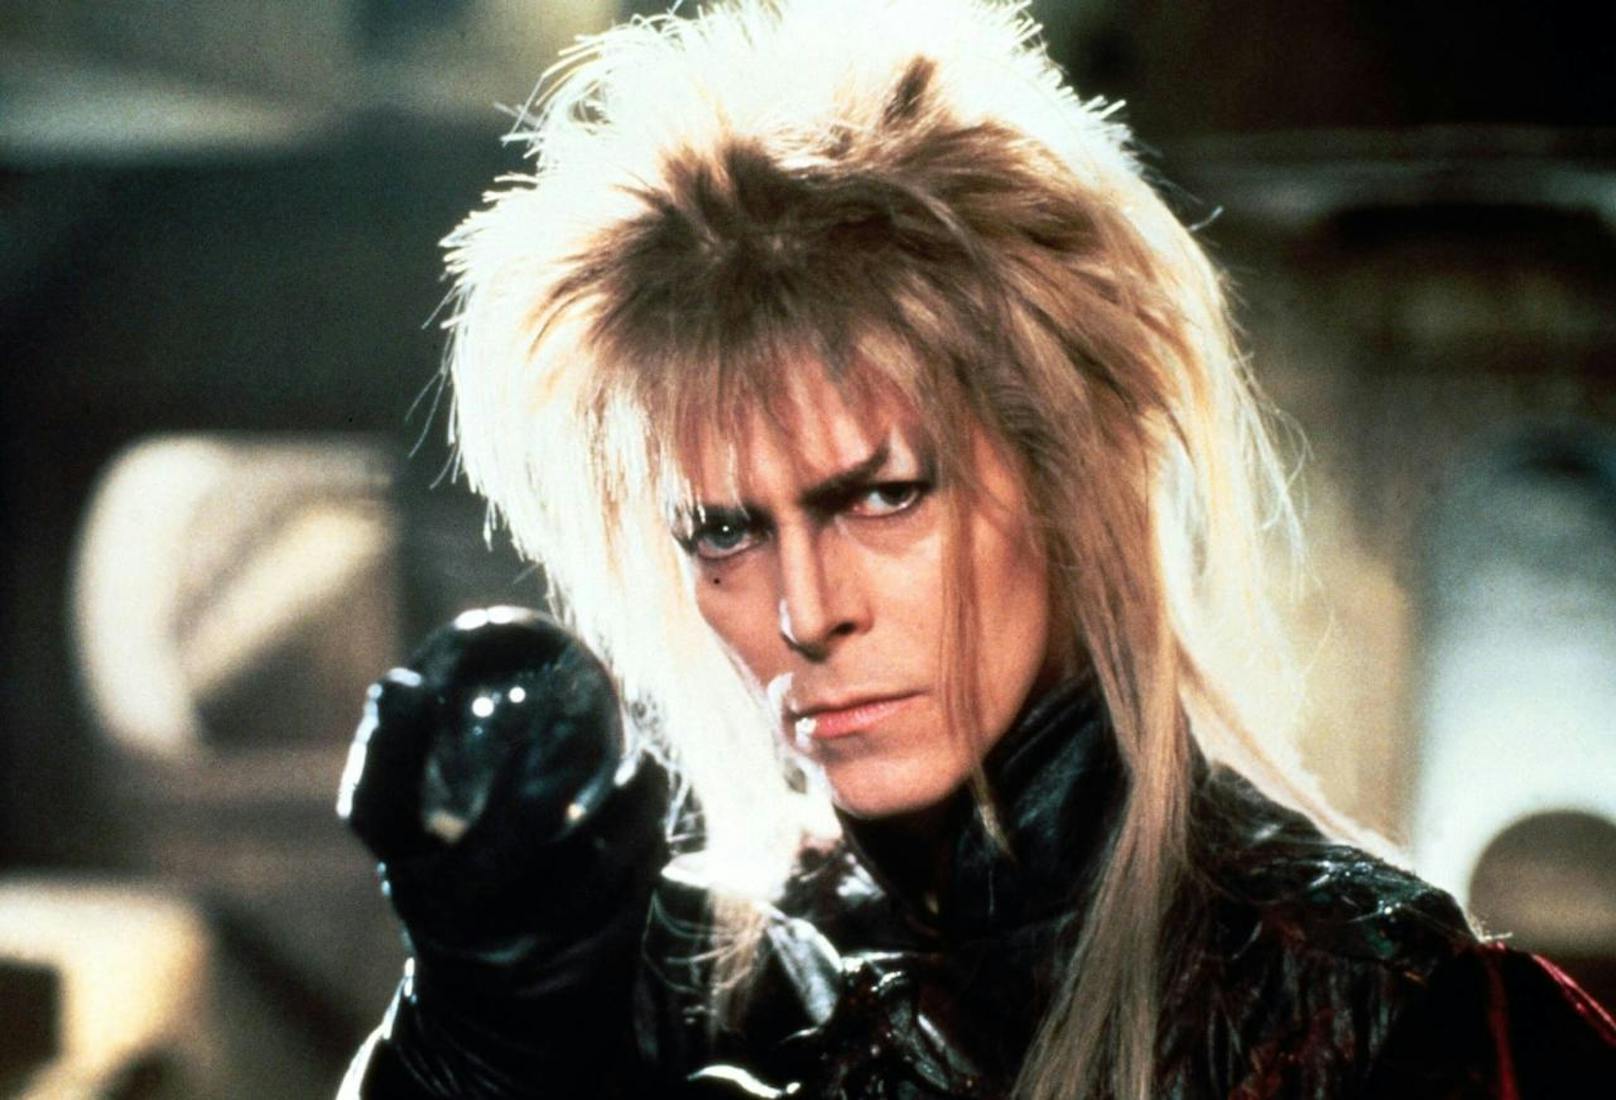 David Bowie im Film "Labyrinth"